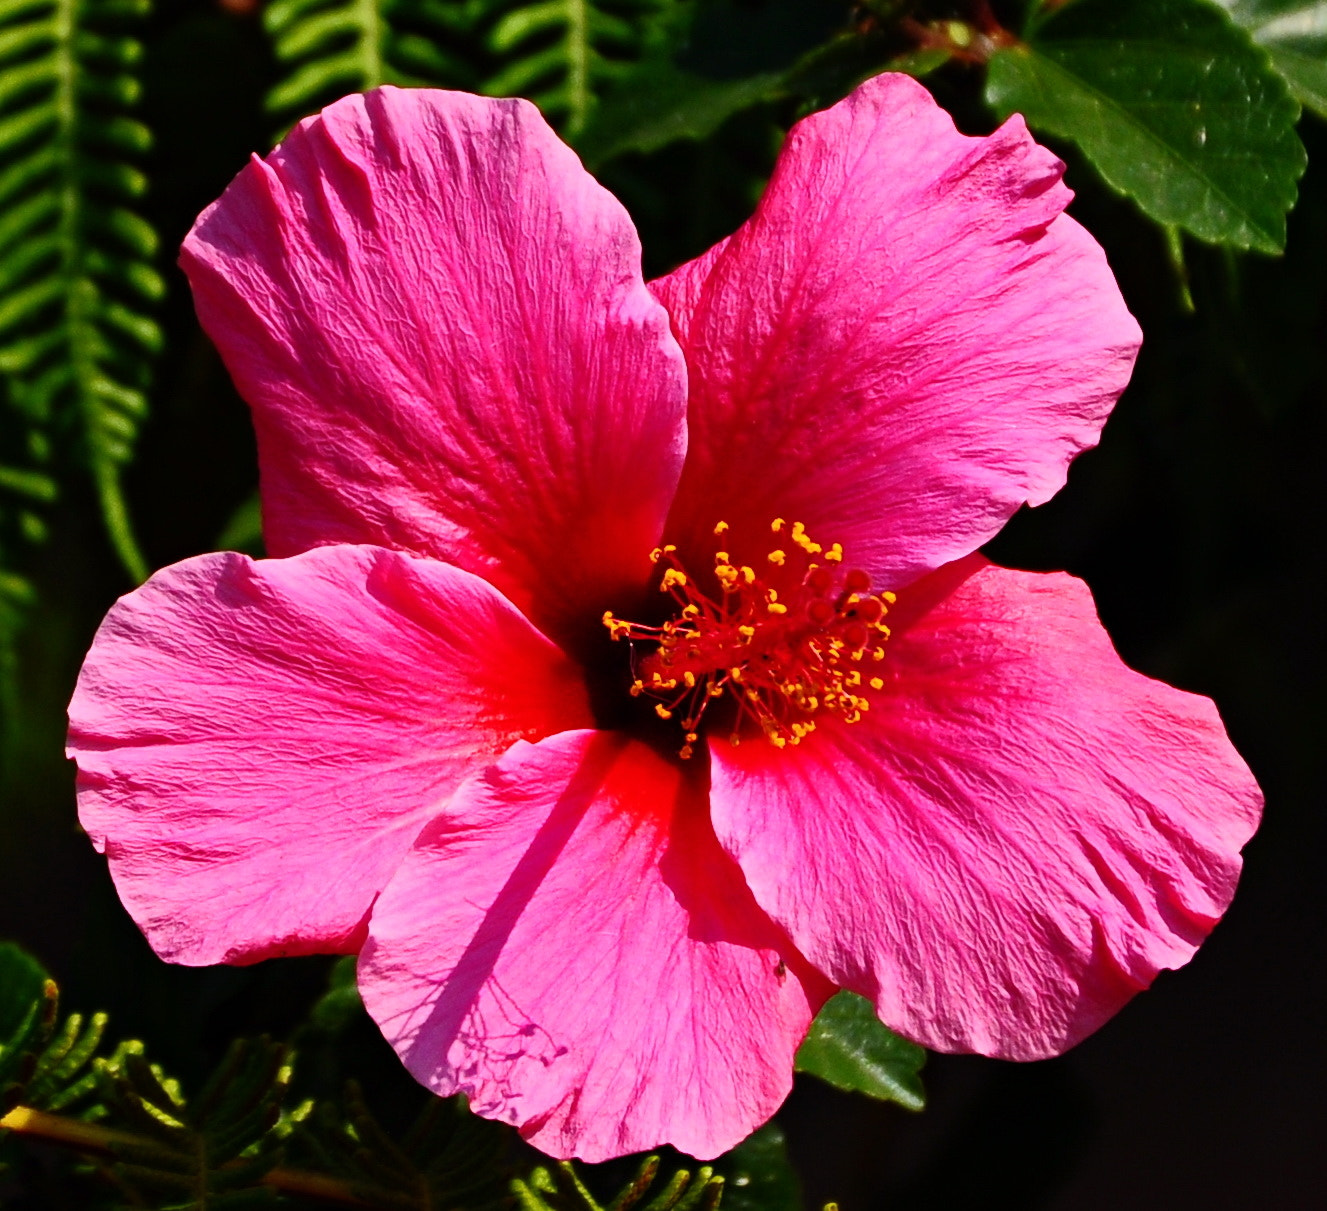 Nikon D90 + Nikon AF-S DX Nikkor 18-140mm F3.5-5.6G ED VR sample photo. Deep rich pink hibiscus flower in garden photography